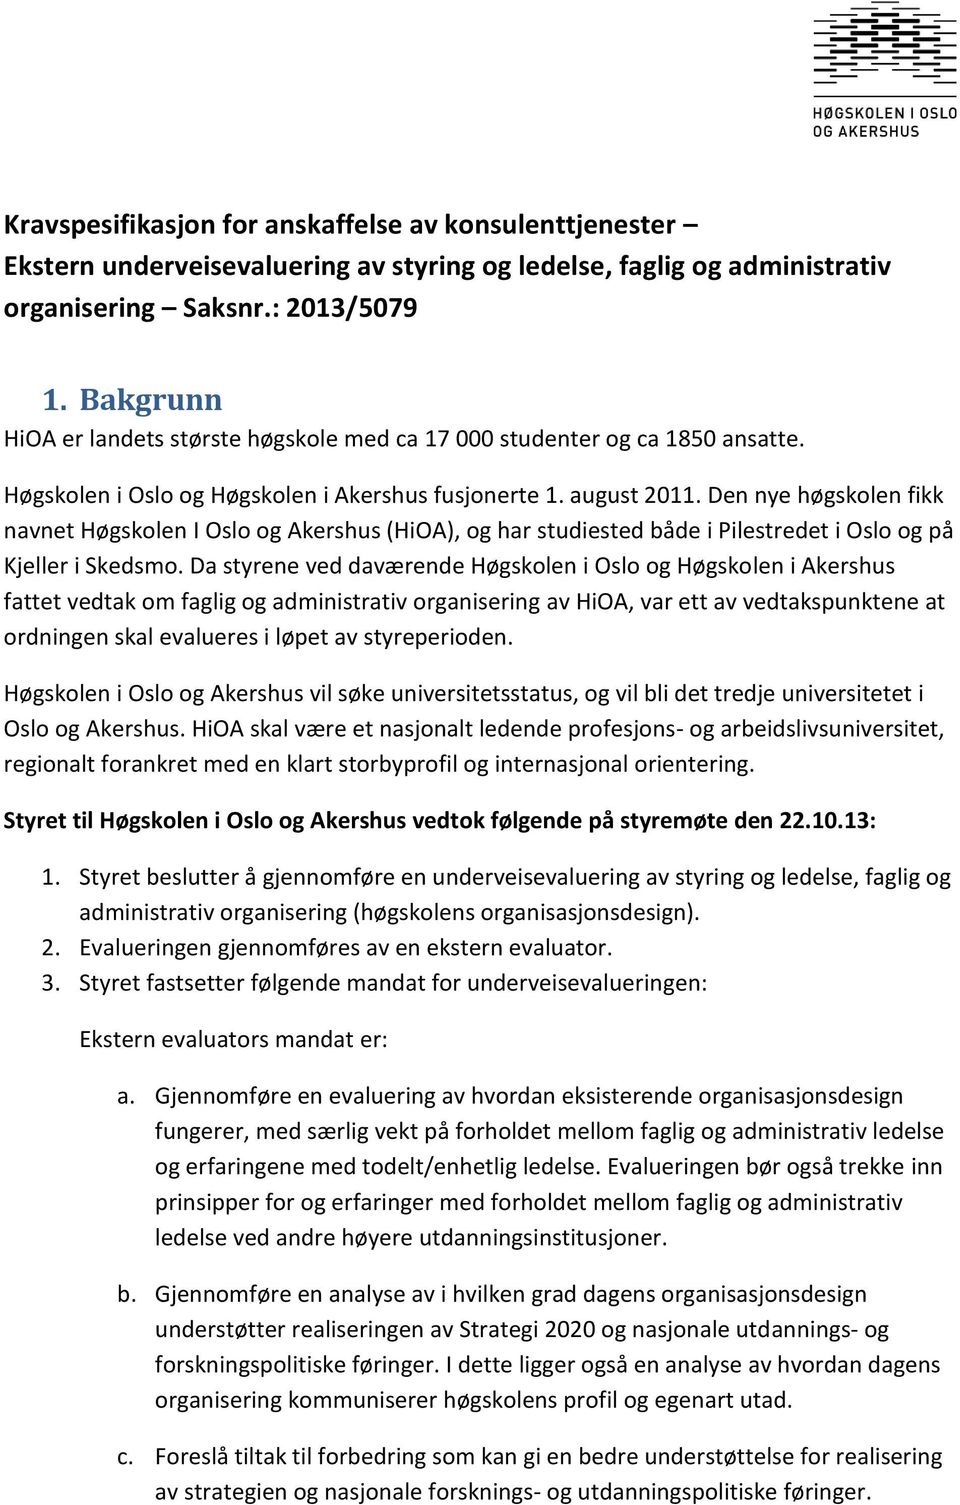 Den nye høgskolen fikk navnet Høgskolen I Oslo og Akershus (HiOA), og har studiested både i Pilestredet i Oslo og på Kjeller i Skedsmo.